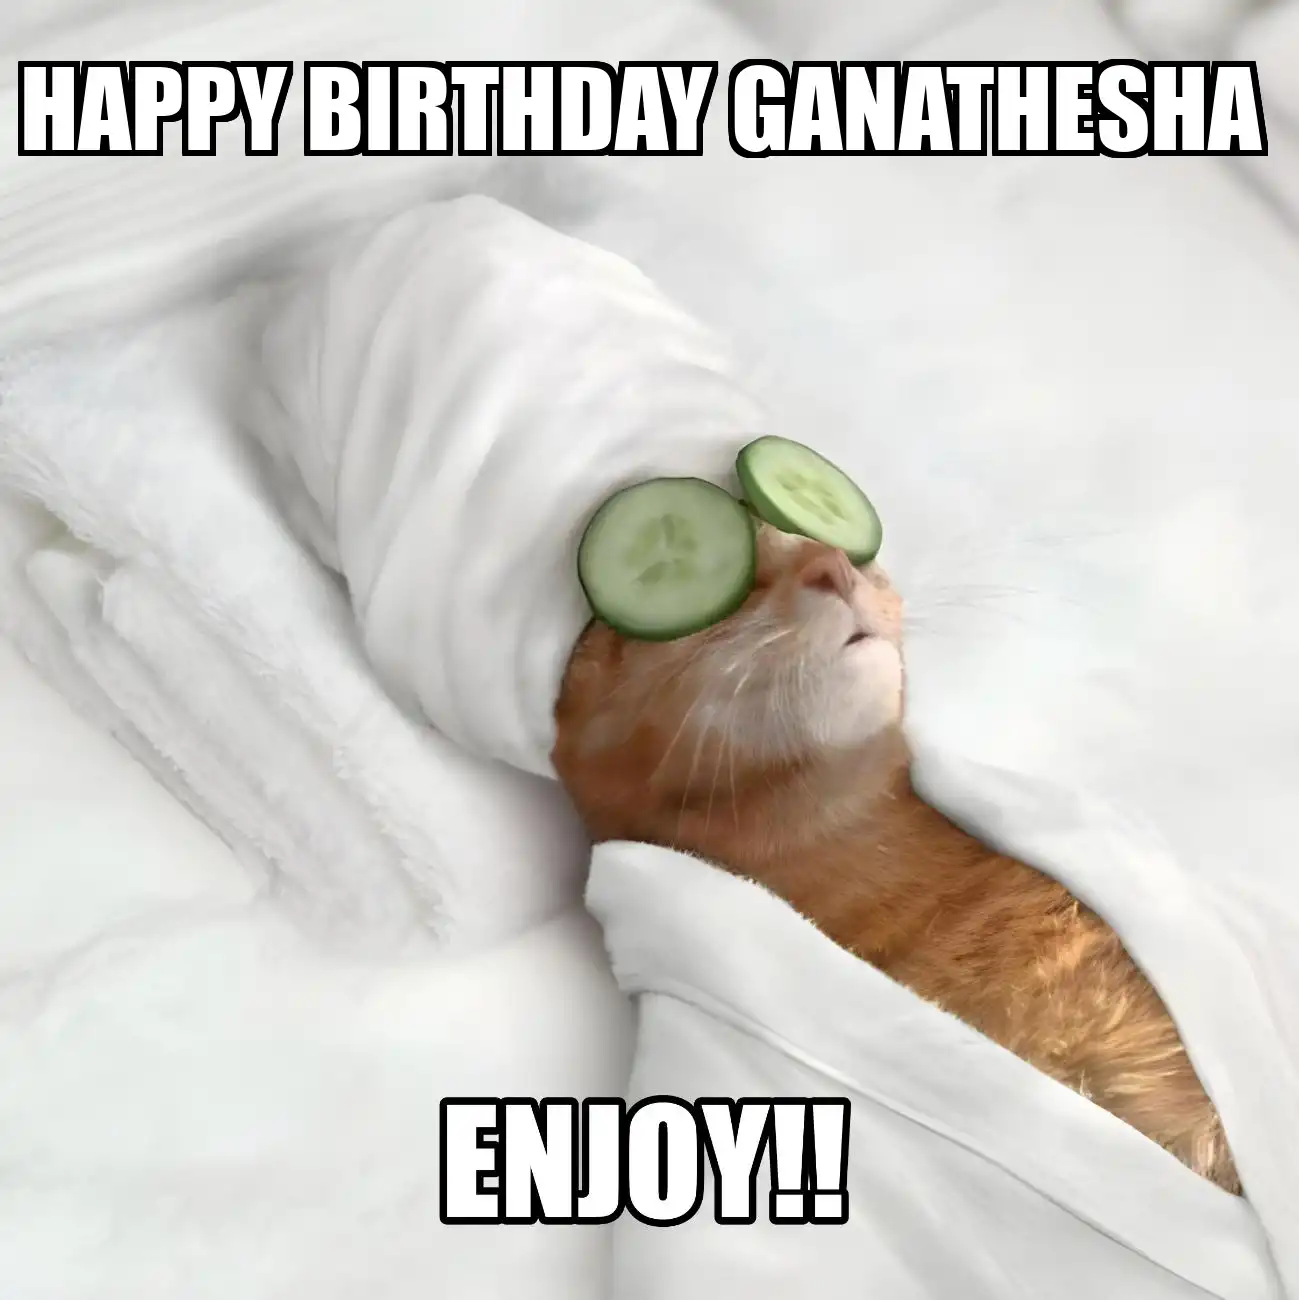 Happy Birthday Ganathesha Enjoy Cat Meme